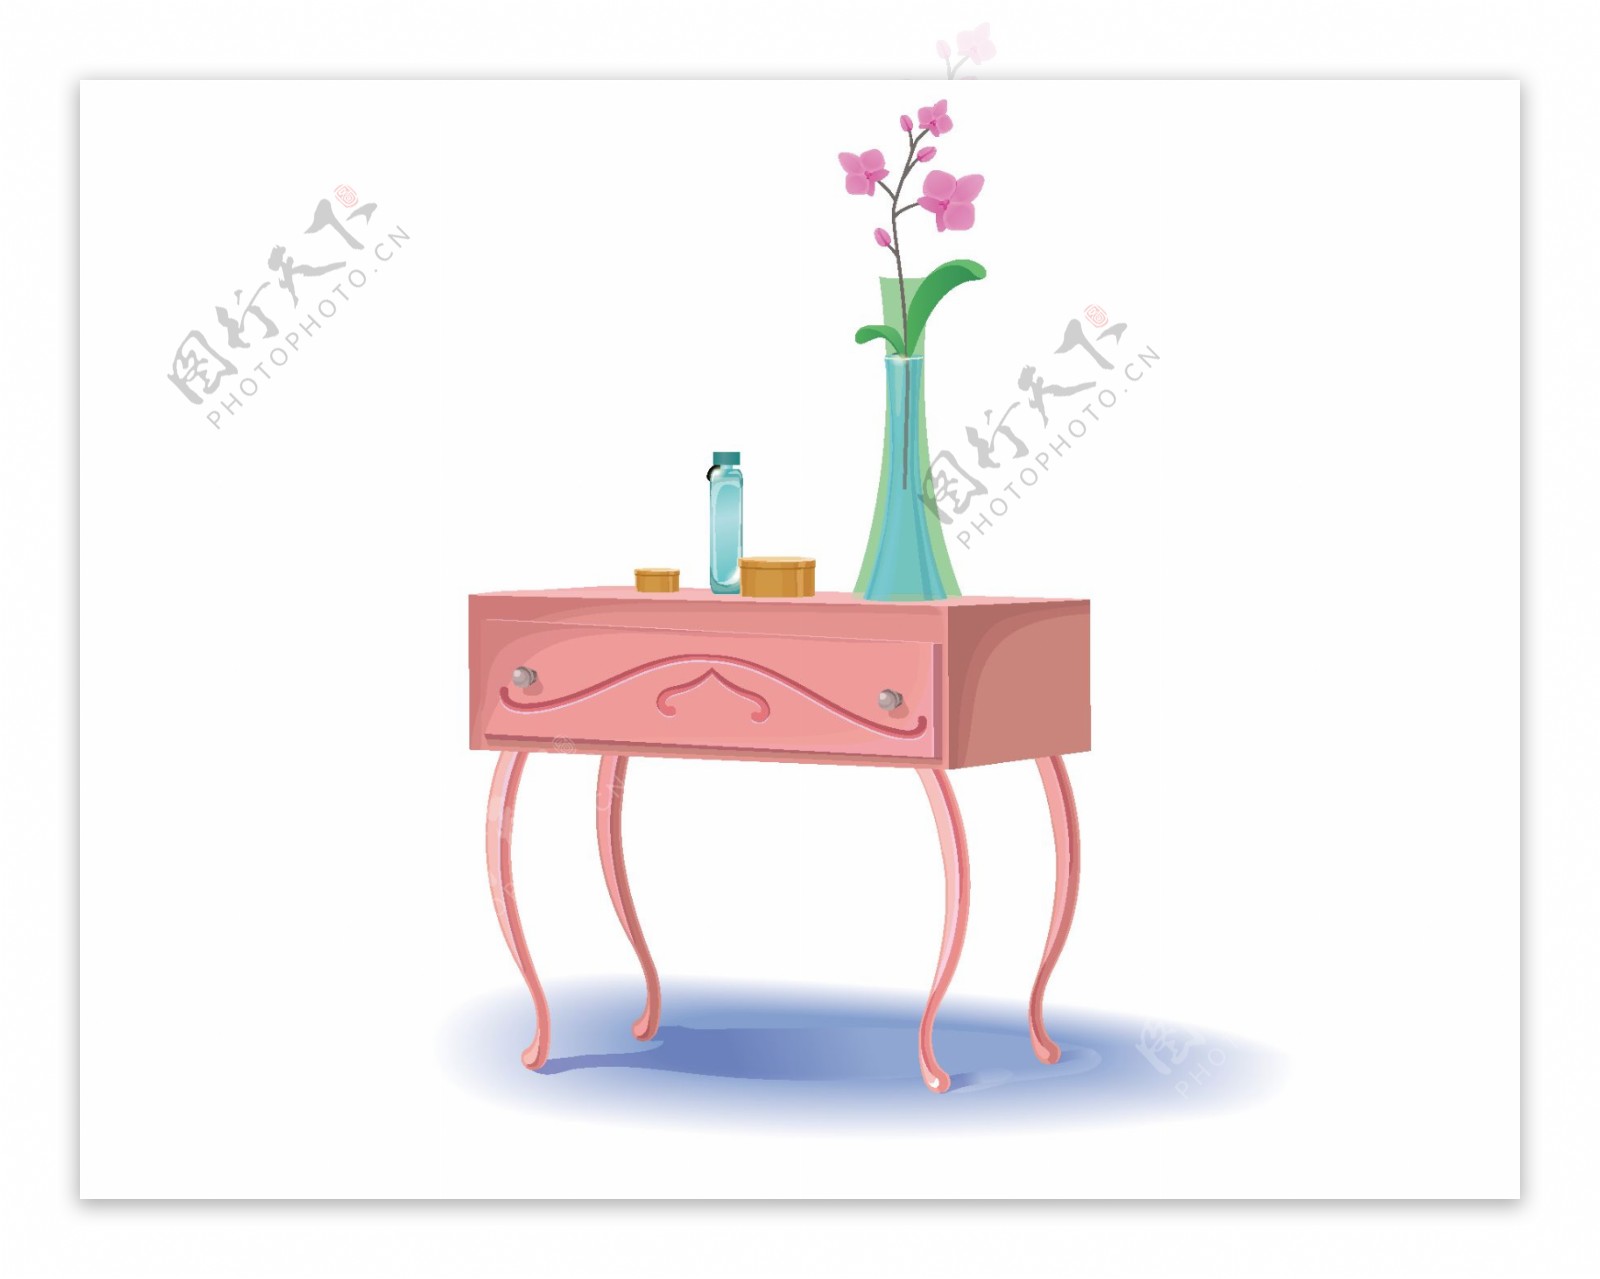 矢量唯美粉色花朵花瓶桌子元素